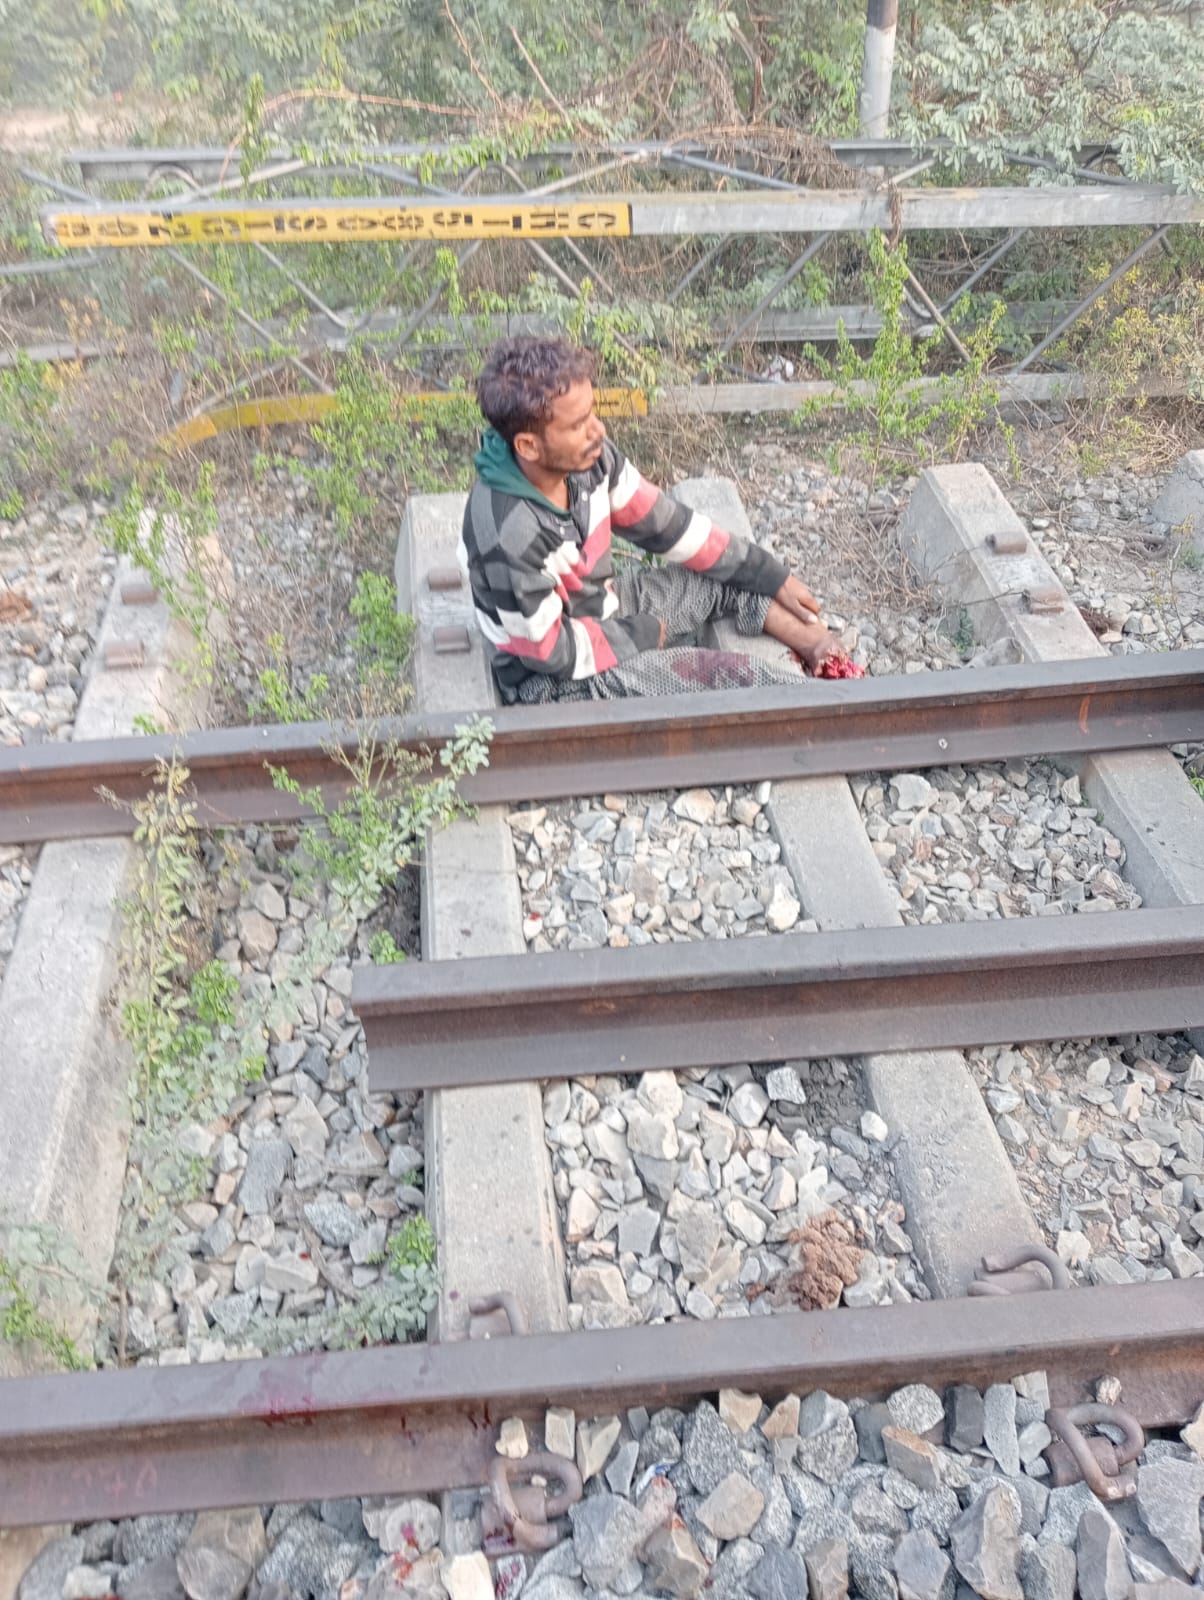 ट्रेन  की चपेट में आने से युवक का एक पैर कटा